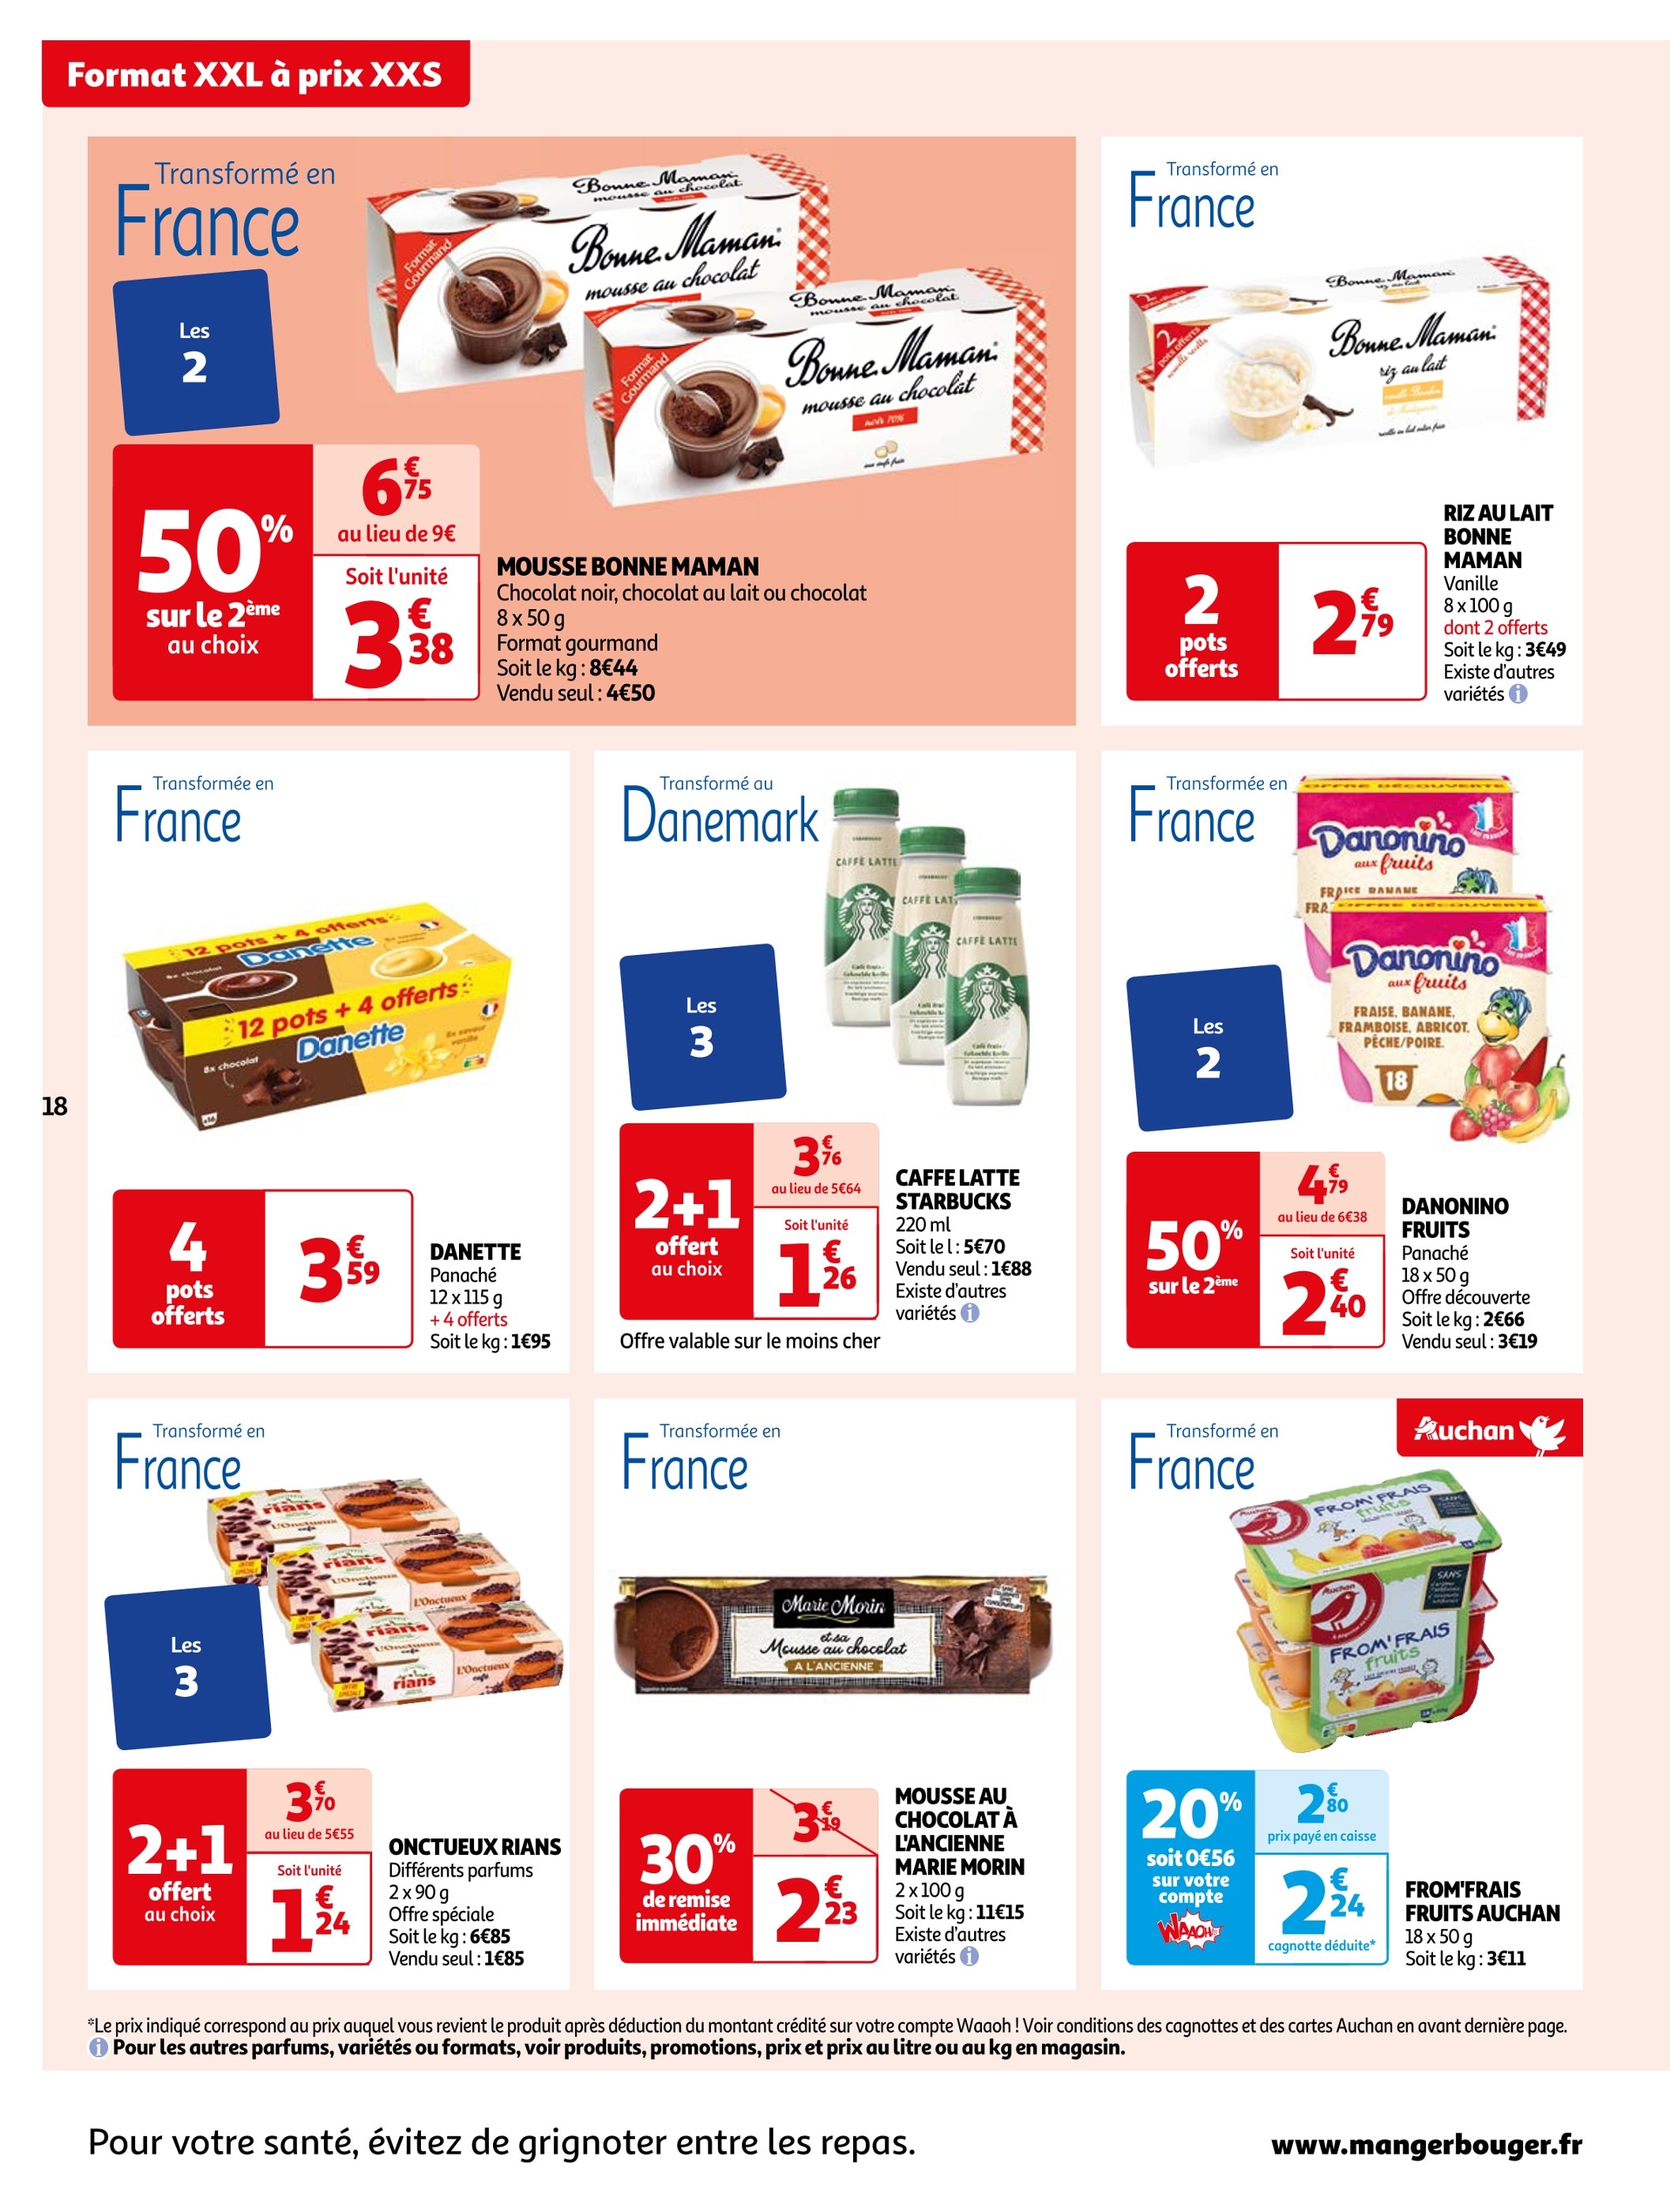 Promo Gâteaux Milka Lot De 2 2+1 Offert Au Choix chez Auchan